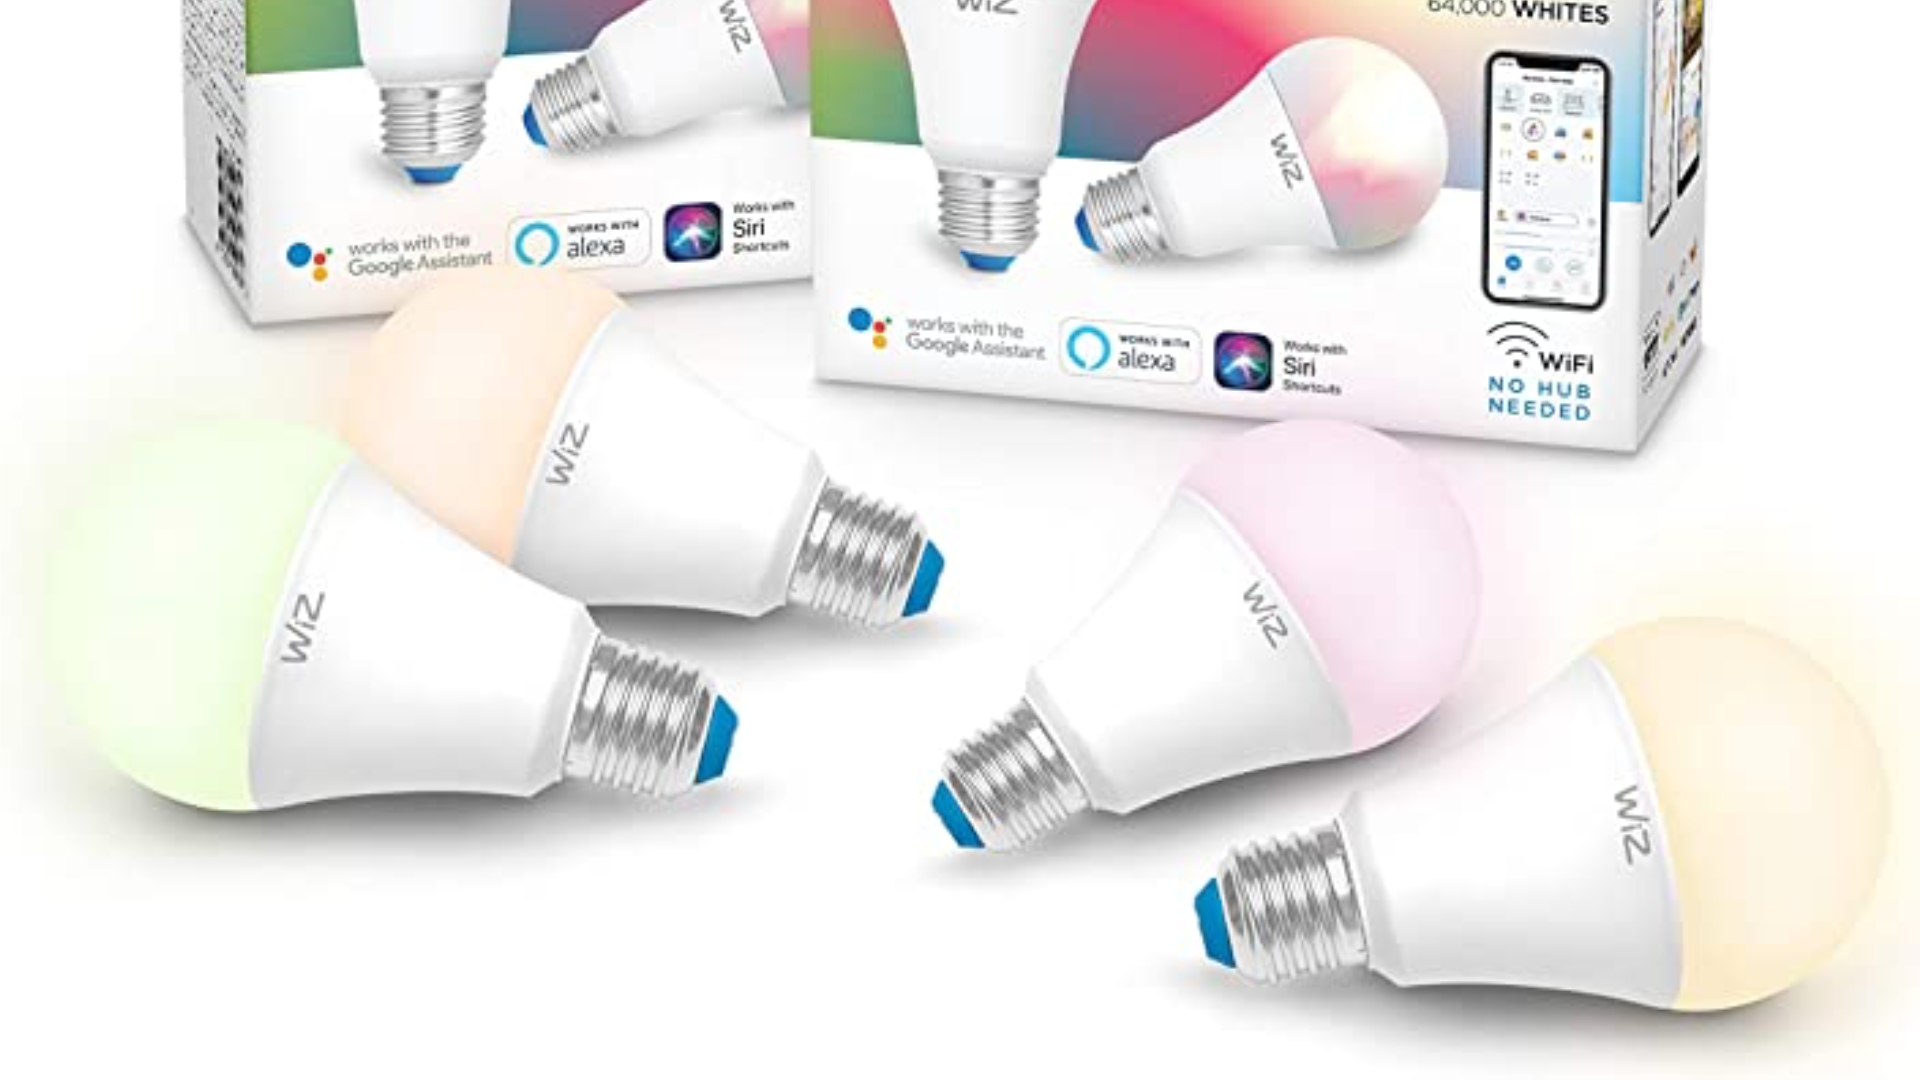 wiz-smart-bulbs.jpg